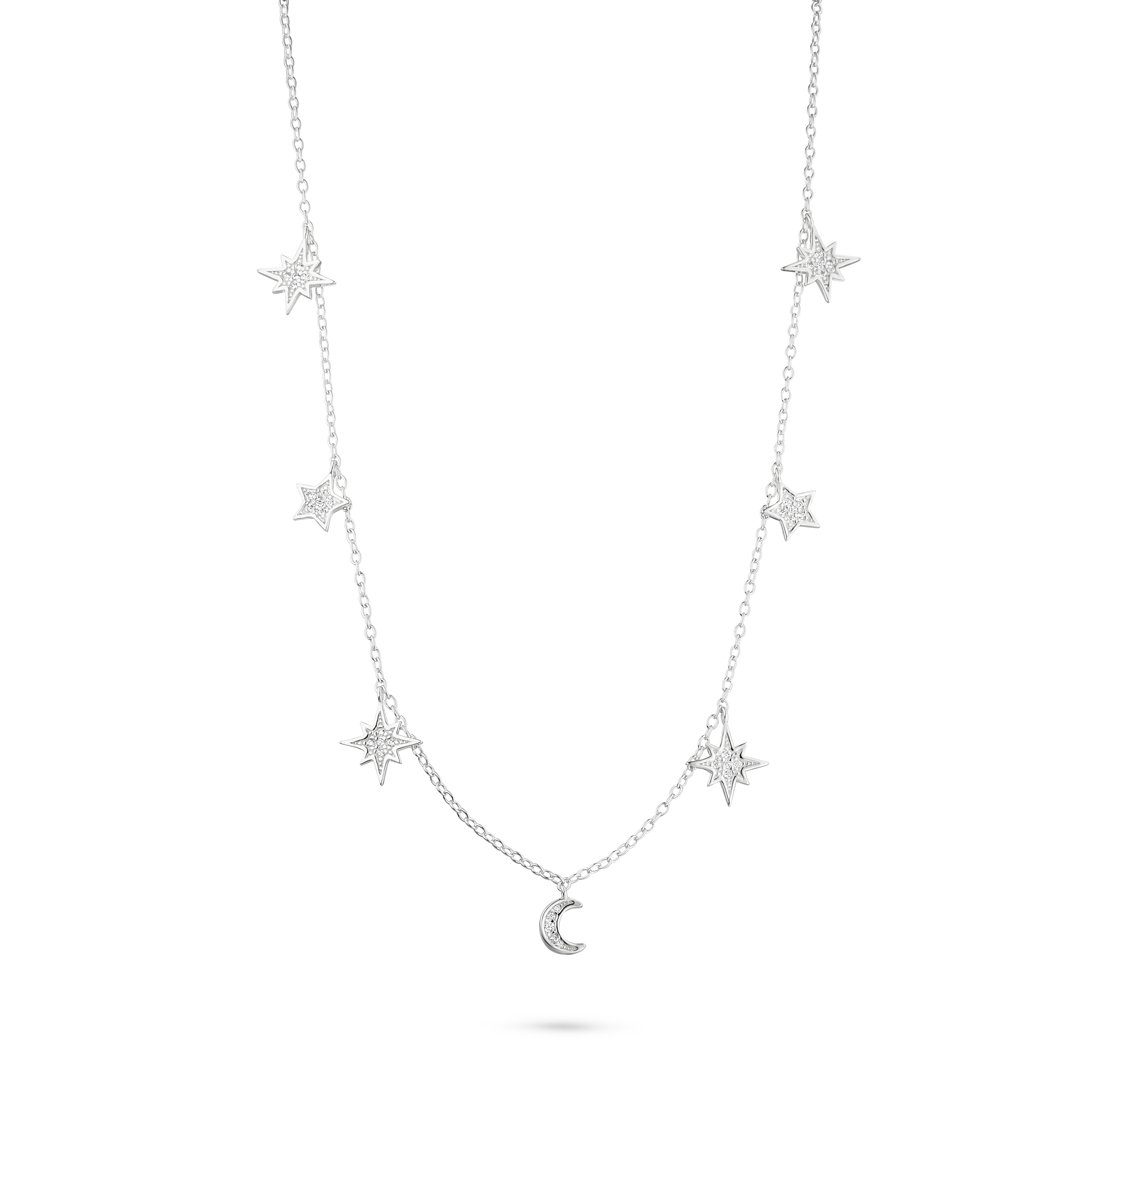 Fiocco Jewelry Collier Universo Kette, 925 Silber